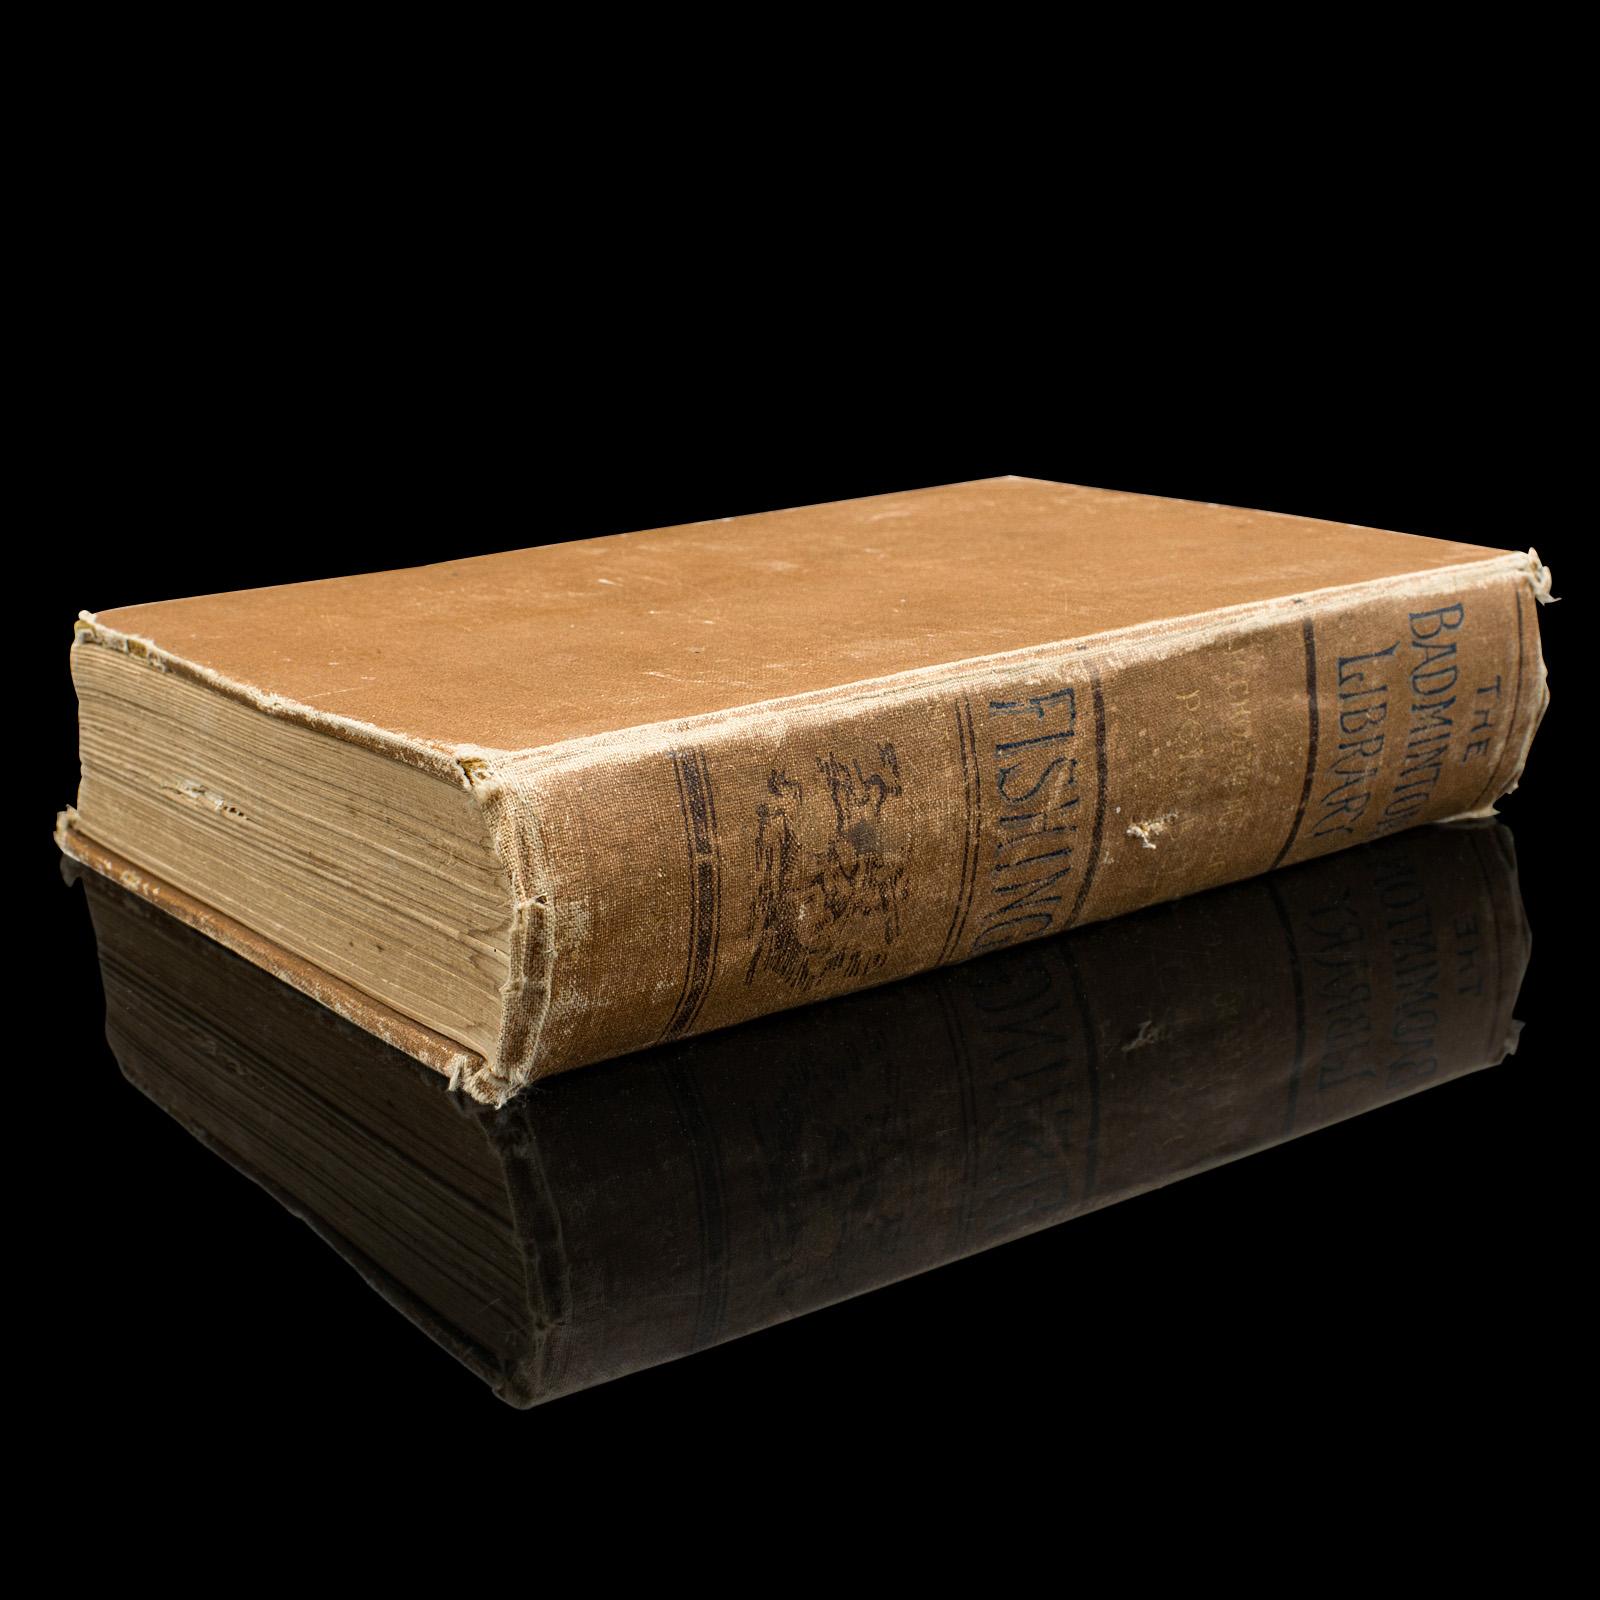 Dies ist ein antikes Buch der Badminton-Bibliothek. Ein englischsprachiges, gebundenes Nachschlagewerk zum Thema Angeln von Henry Cholmondeley-Pennell aus der späten viktorianischen Zeit, etwa 1890.

Die dem Prinzen von Wales (später Edward VII.)